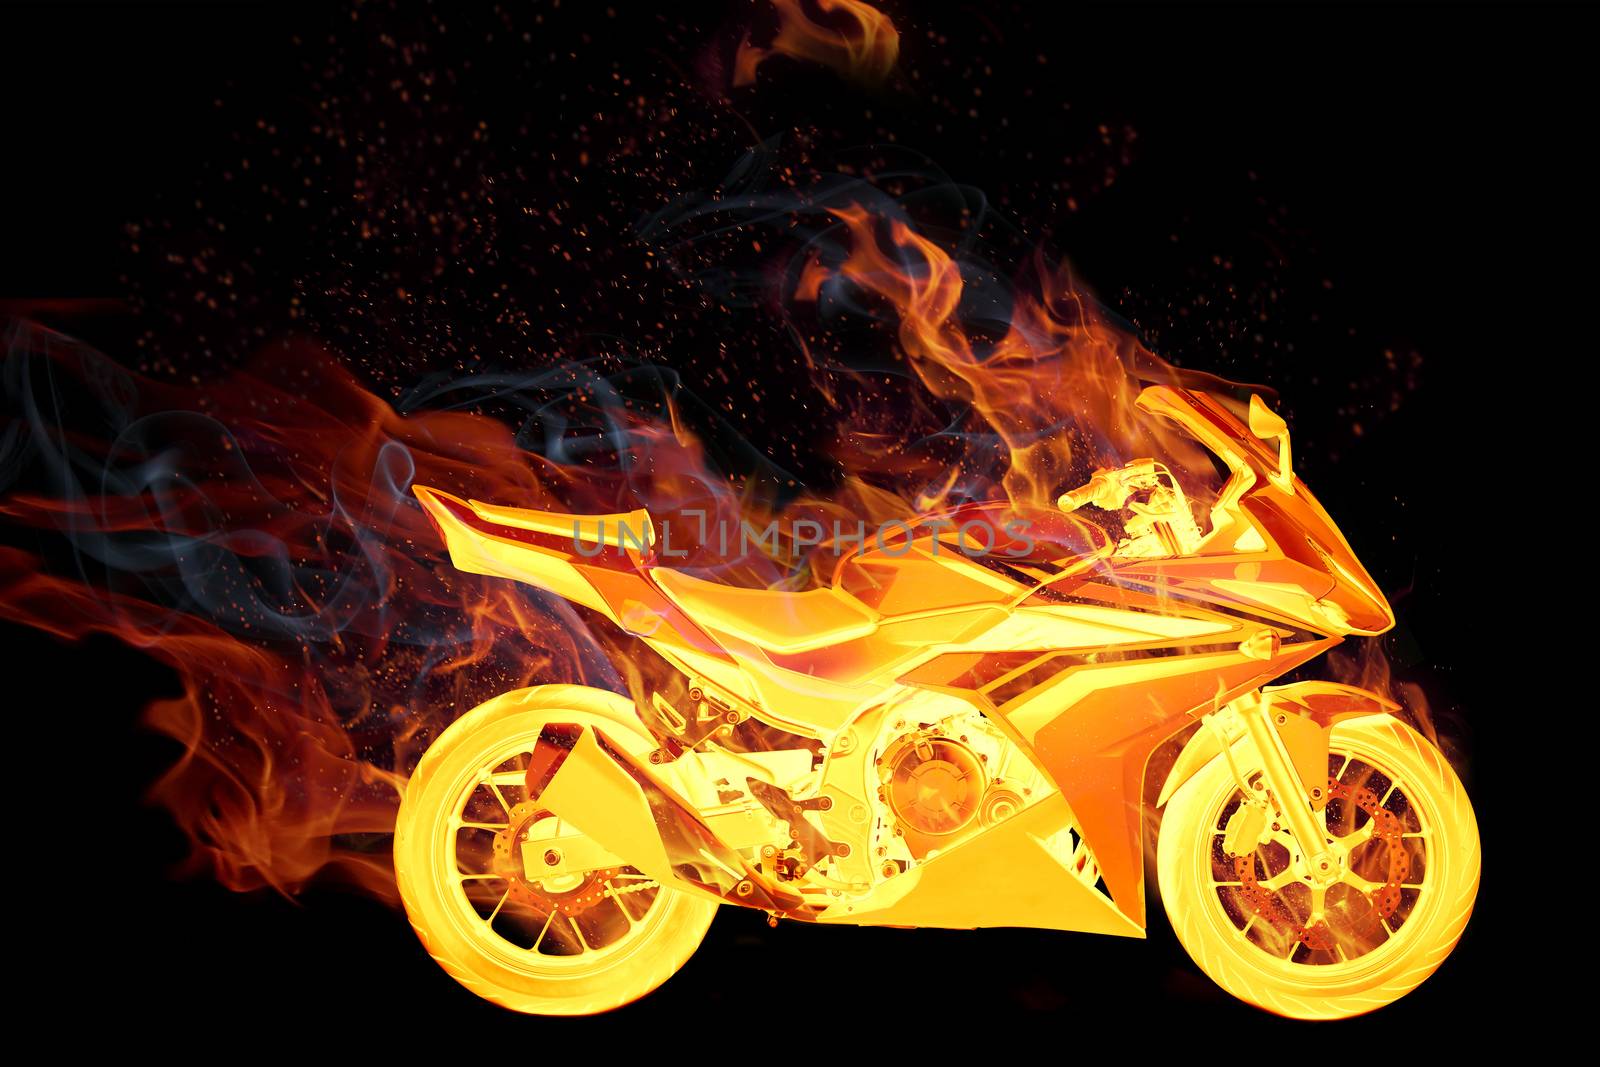 bike in fire by ozaiachin